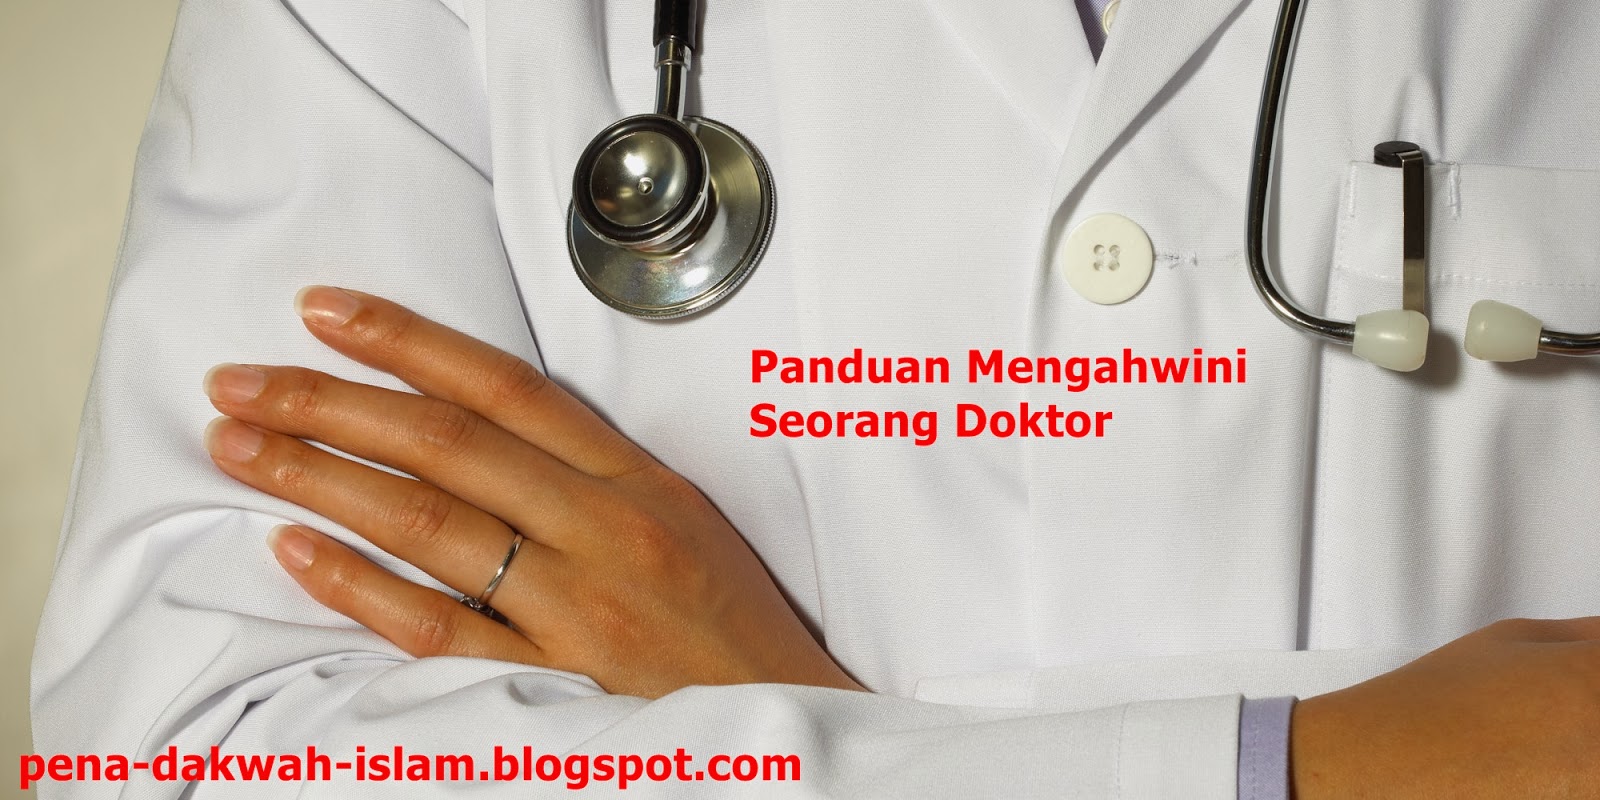 http://pena-dakwah-islam.blogspot.com/2014/02/panduan-mengahwini-seorang-doktor.html